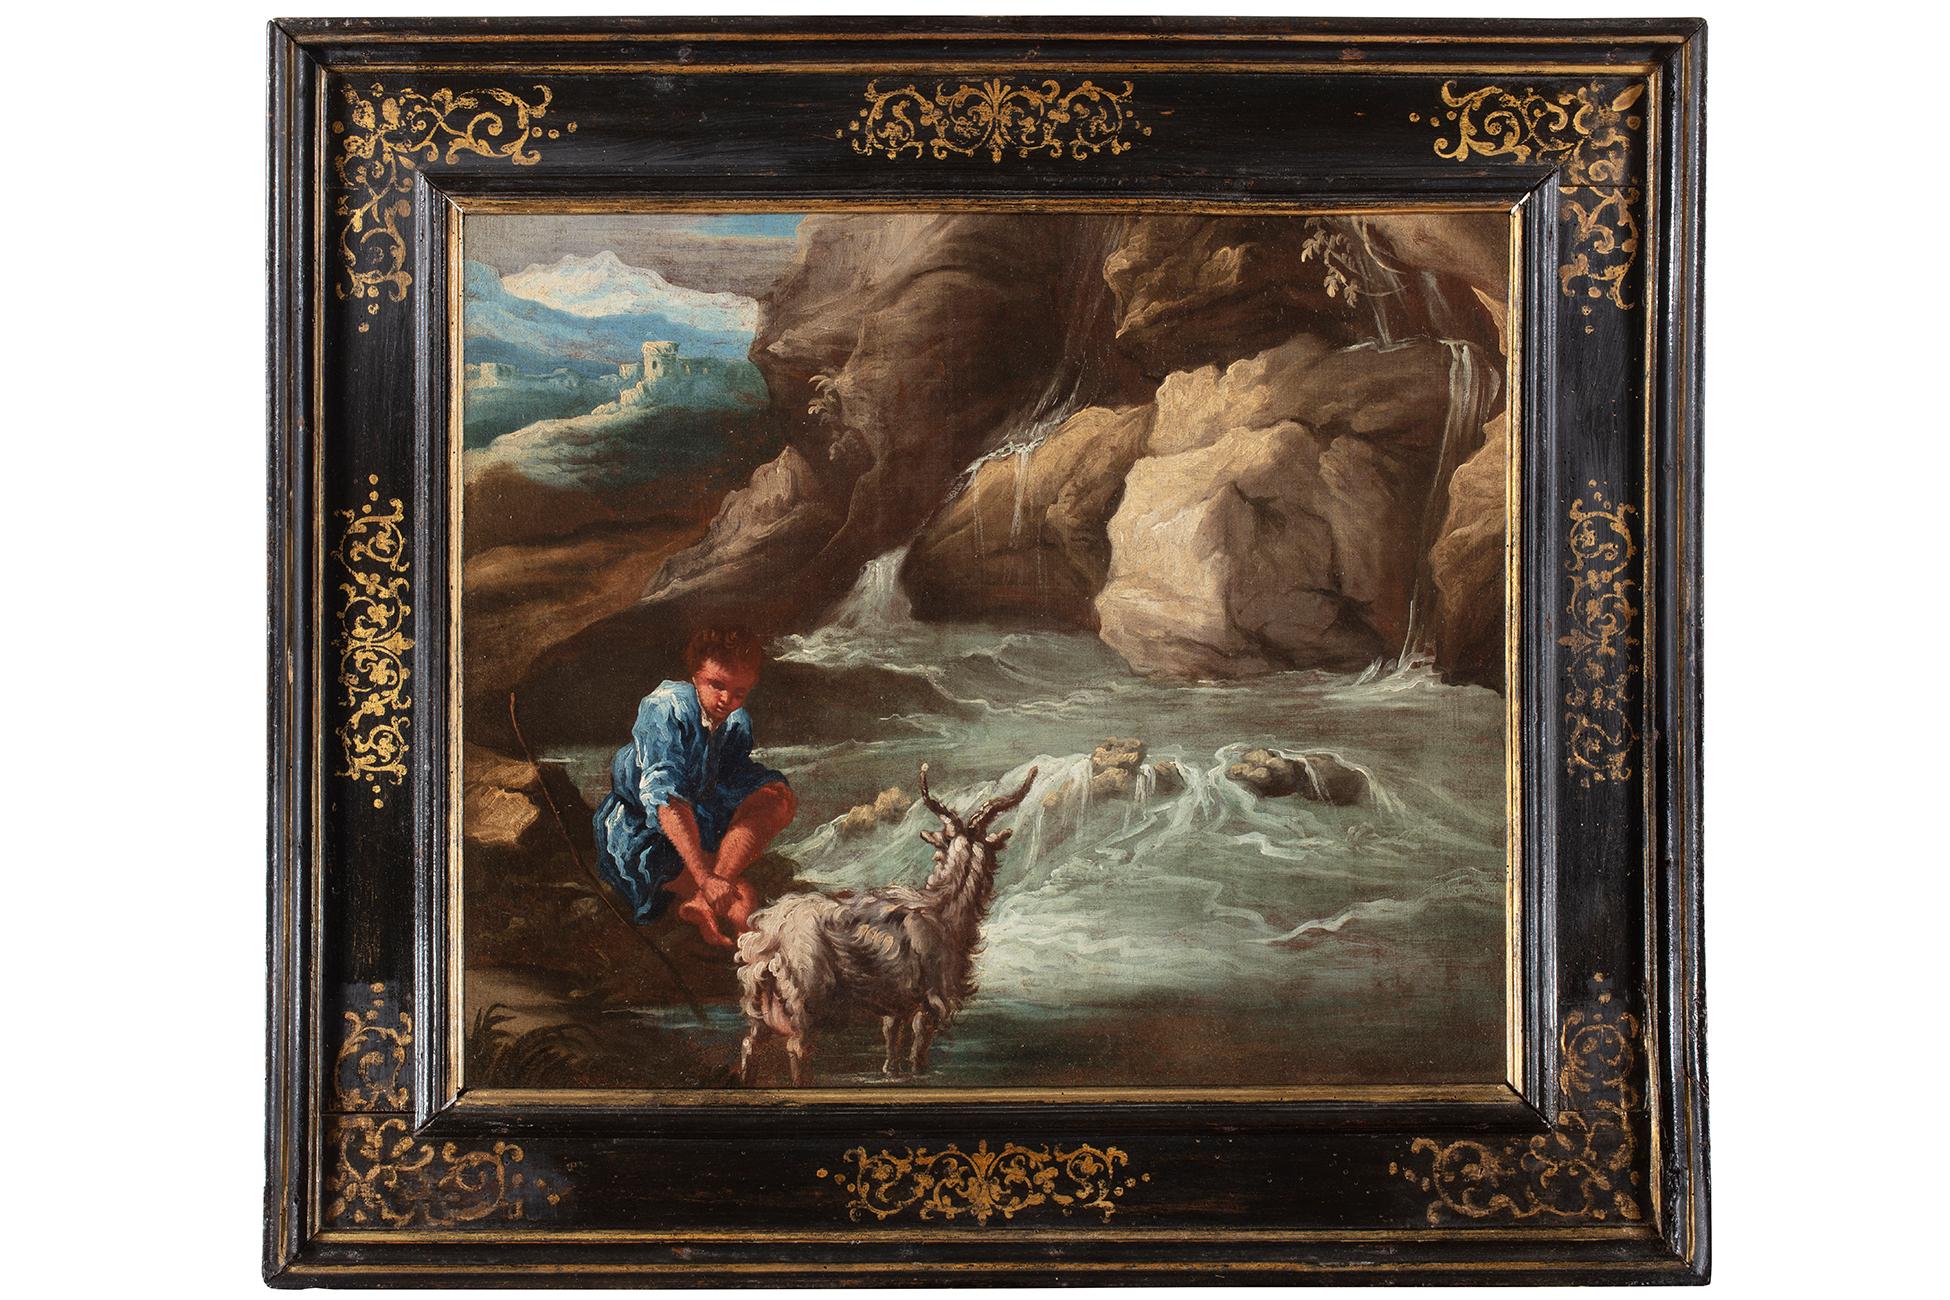 Landscape Painting Giuseppe Antonio Pianca - Huile sur toile du 18ème siècle de Giuseppe Pianca, berger avec chèvre et rivière